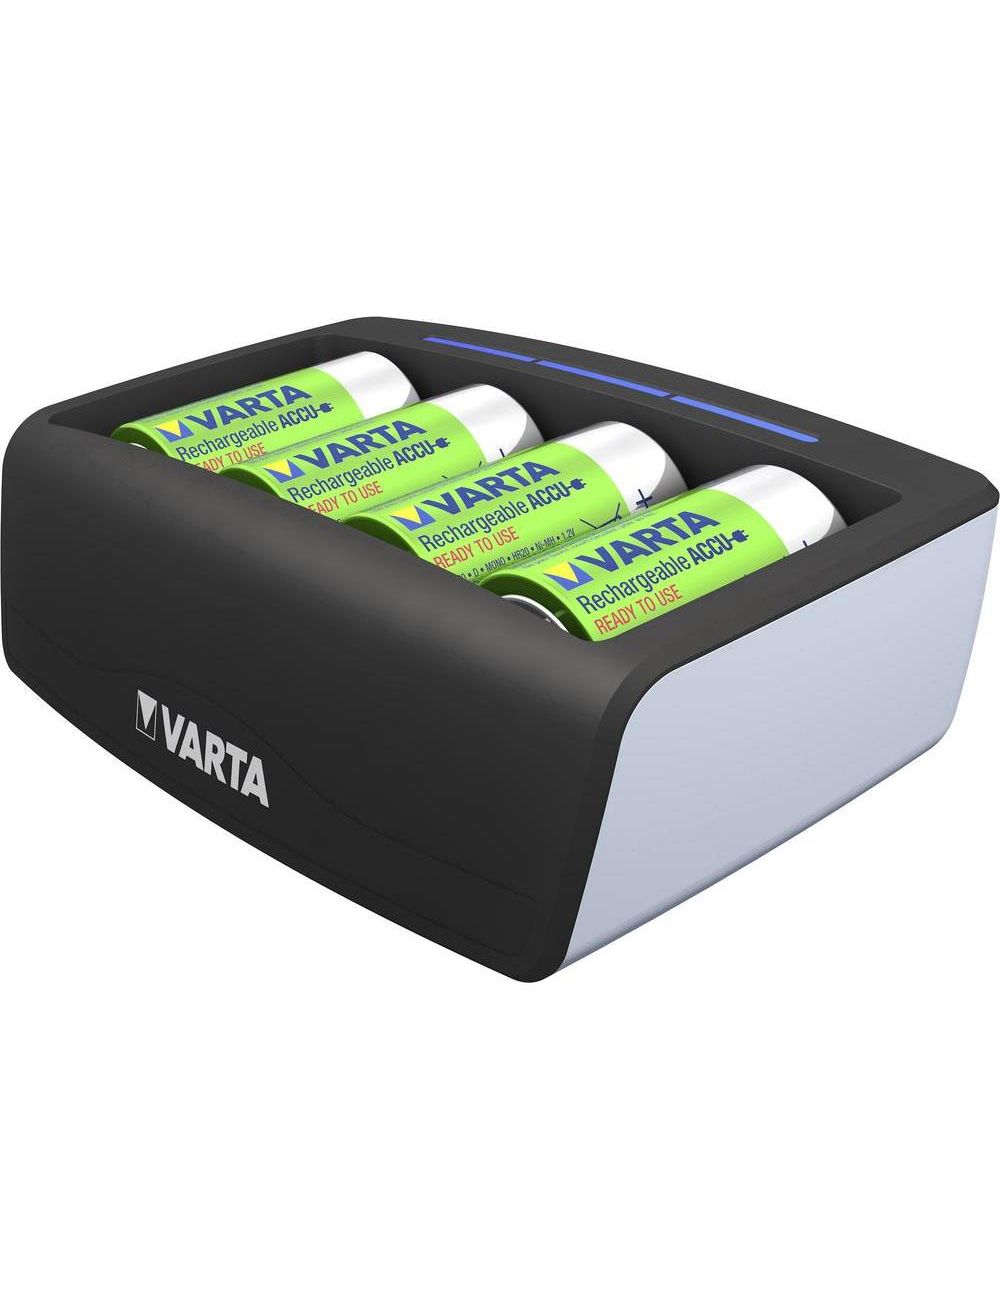 Cargador para pilas AAA, AA, C, D y 9V recargables Varta - 1